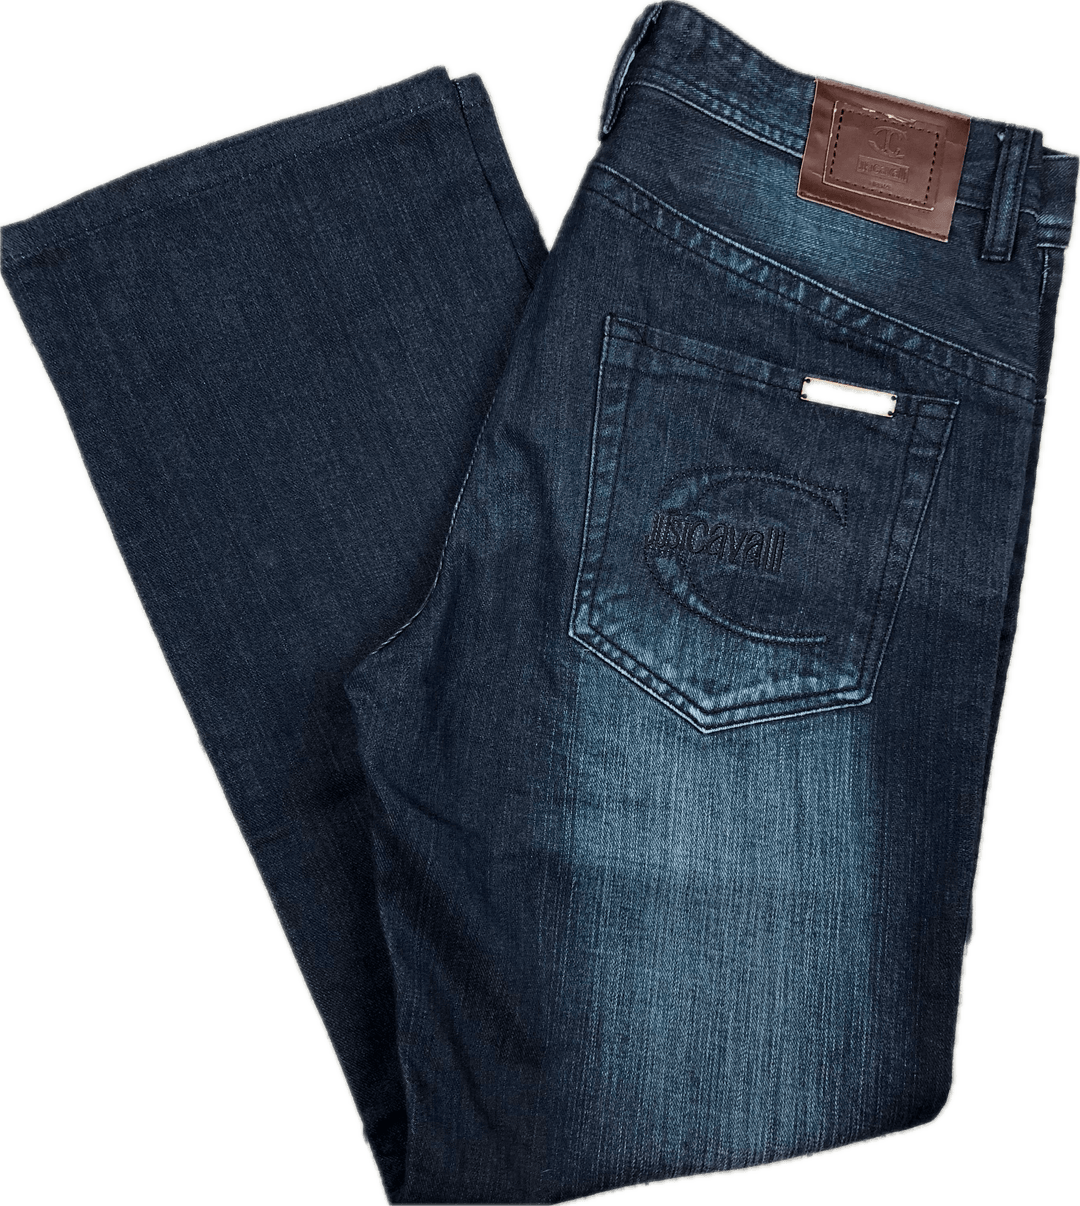 Just Cavalli Italian Dark Wash Distressed Jeans - Size 33 - Jean Pool